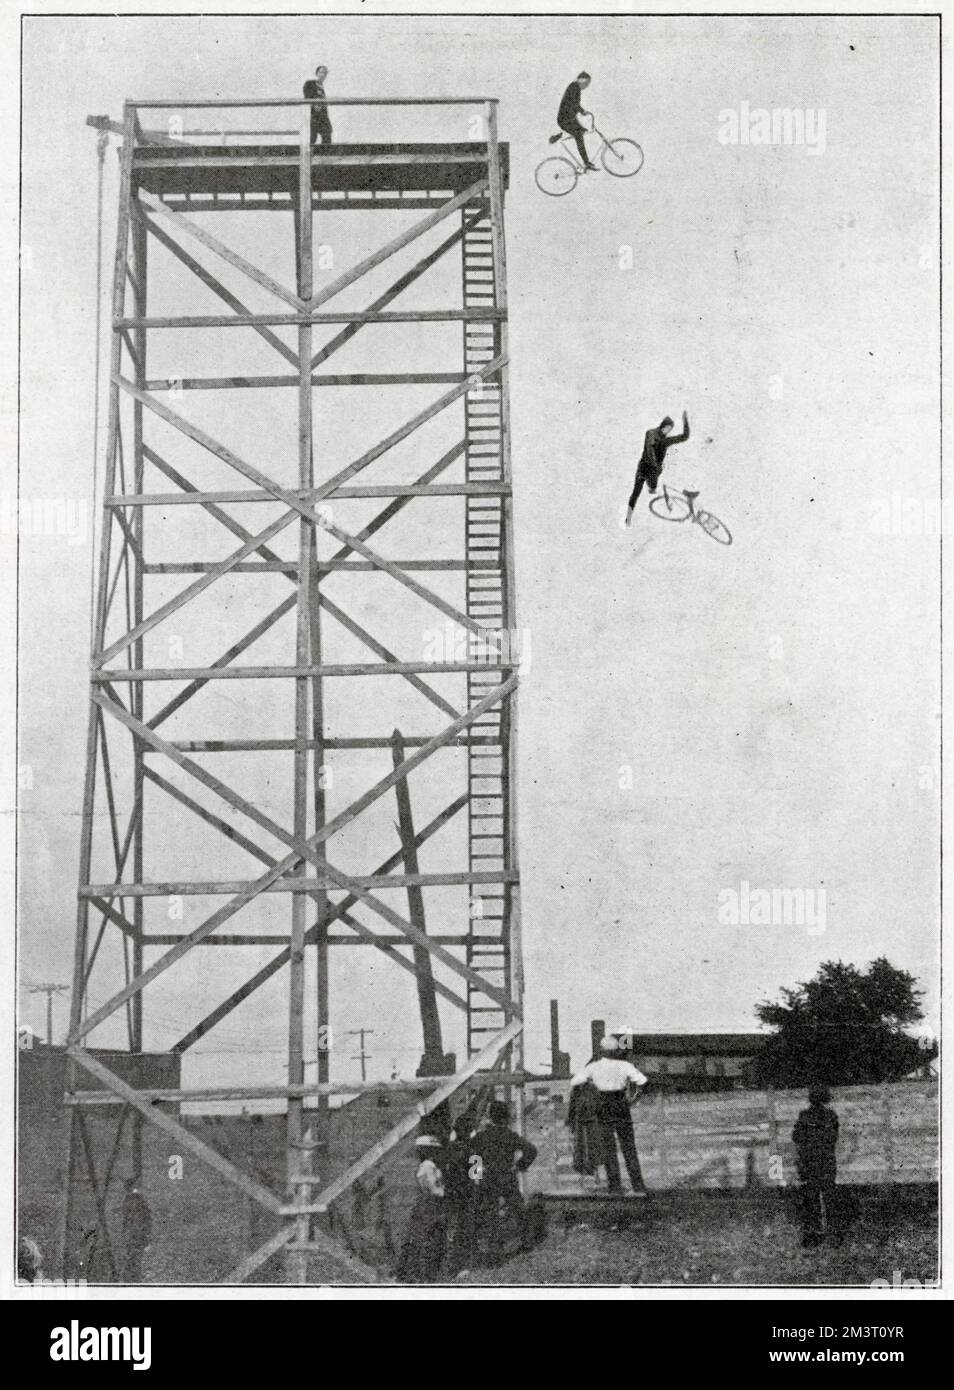 Eddie Gifford, il ciclista a una zampe in una fotografia che dimostra il suo salto in bicicletta a prova di morte da una piattaforma sopraelevata sul tetto dell'Ippodromo. Si tuffò dalla piattaforma, attraverso il foro nel tetto e nel serbatoio dell'acqua sottostante. Gifford aveva perso la gamba in una precedente acrobazia. Data: 1902 Foto Stock